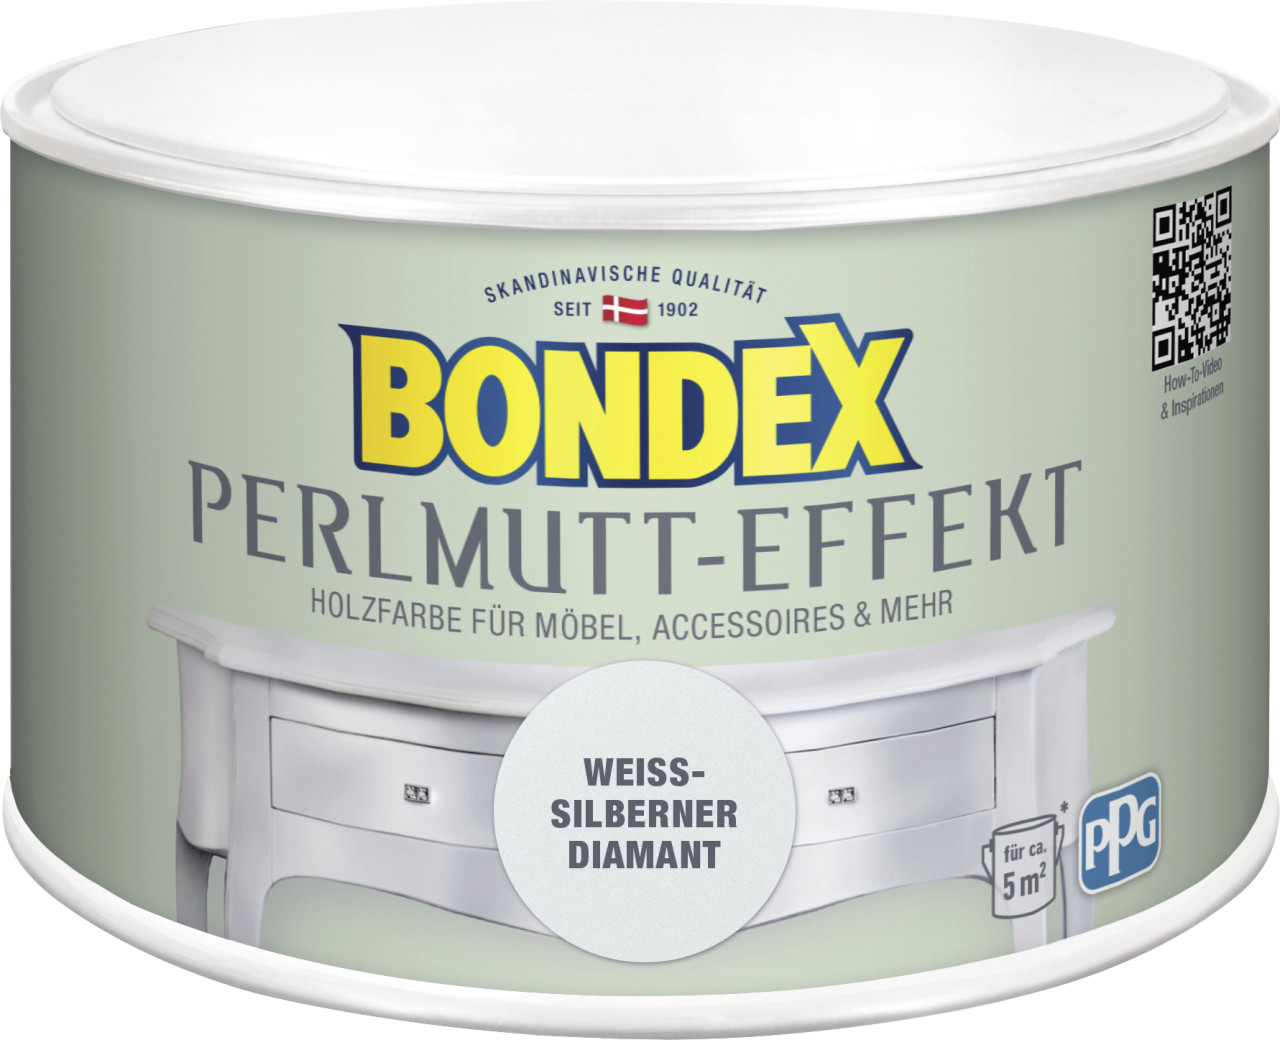 Bondex Holzfarbe Perlmutt-Effekt 500 ml weißer diamant von Bondex